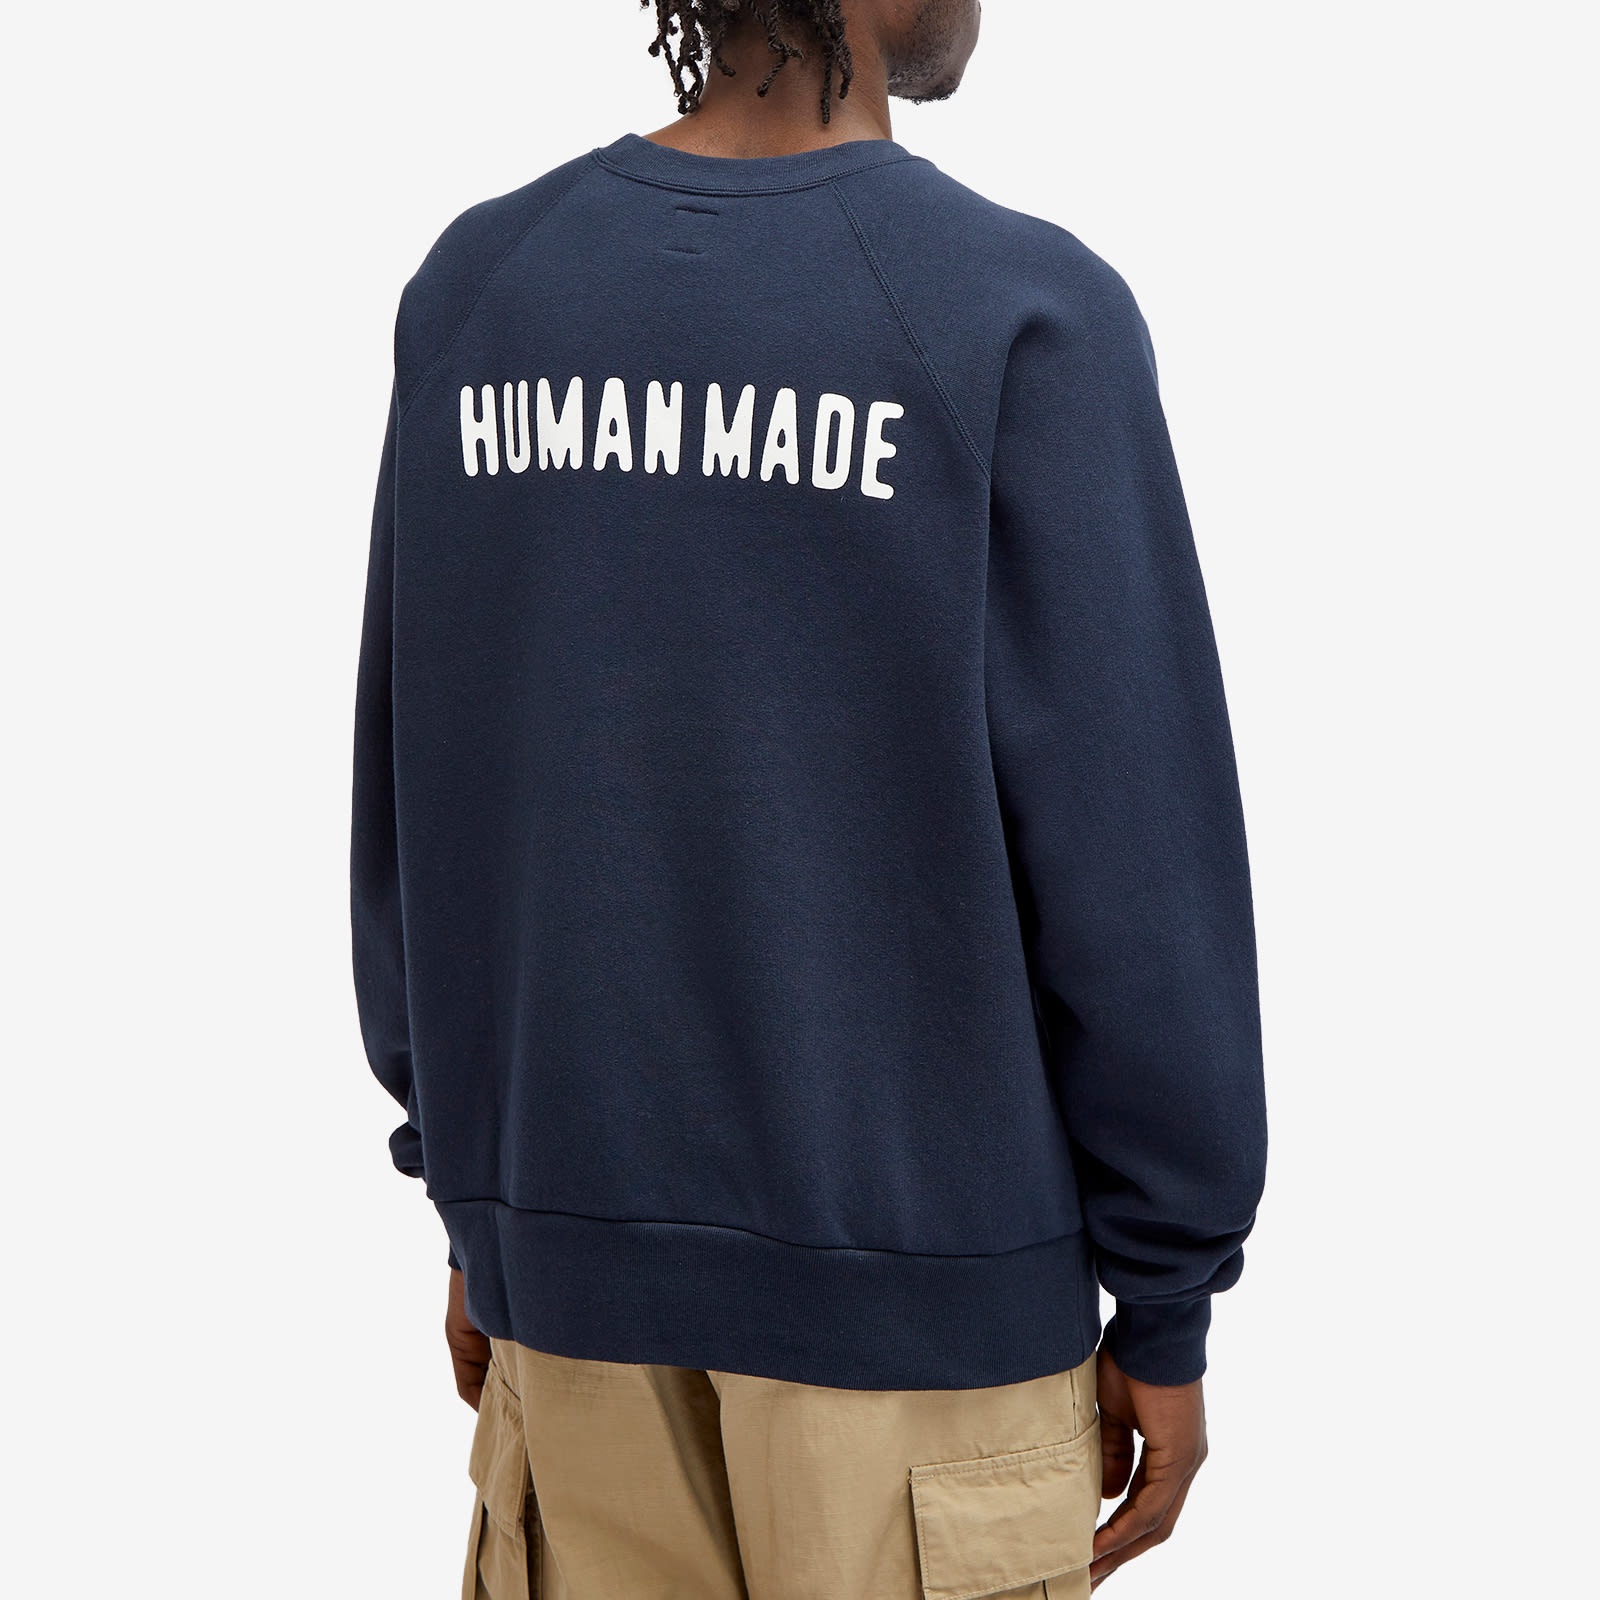 Human Made Heart Logo Sweatshirt - 3